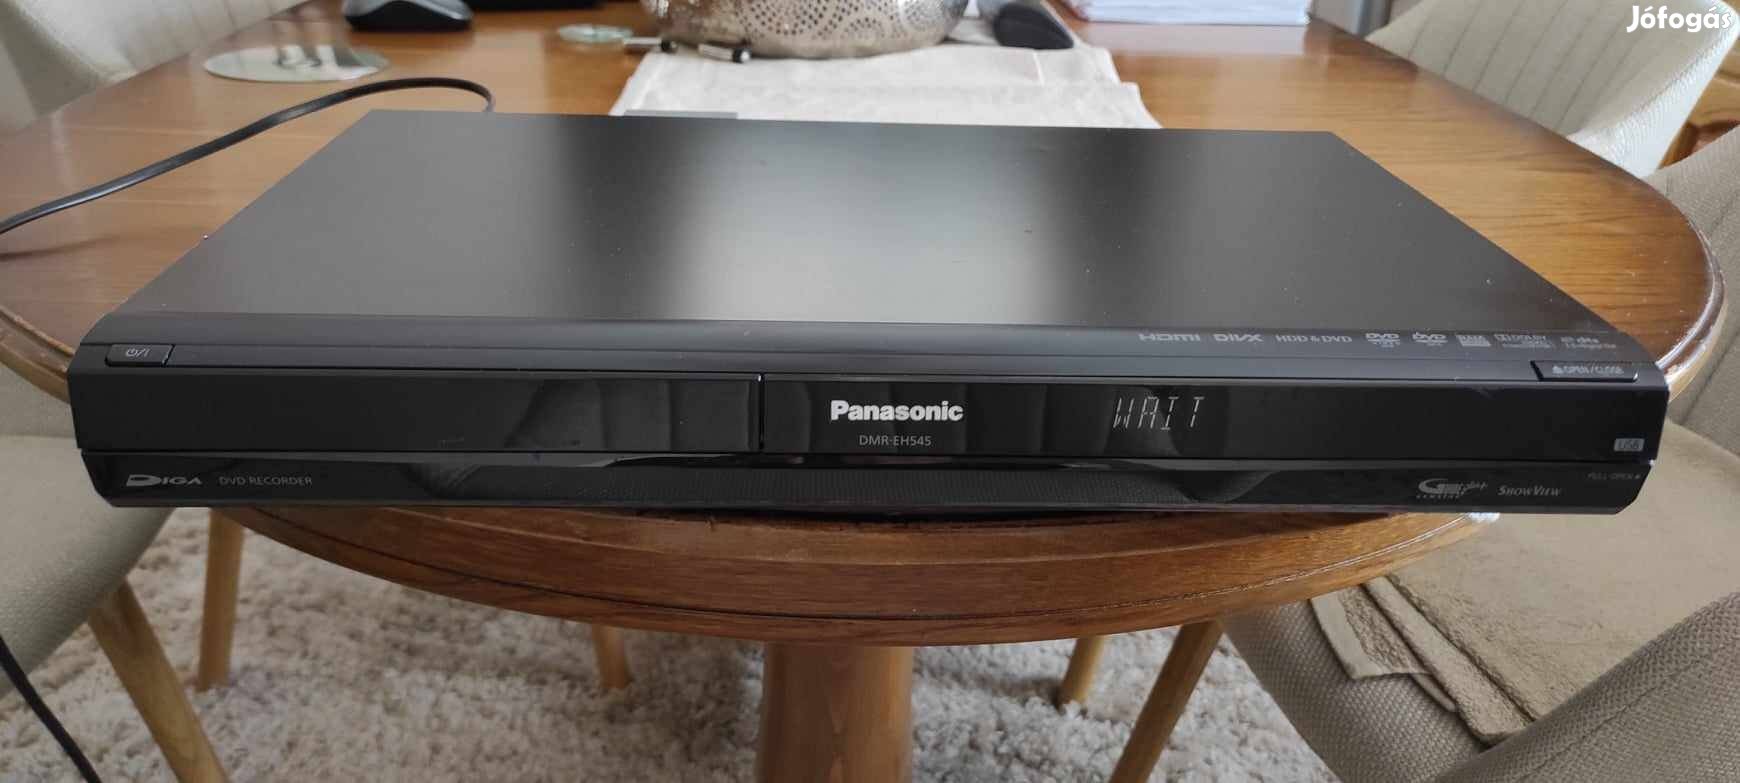 Panasonic DMR-EH545 DVD felvevő és lejátszó